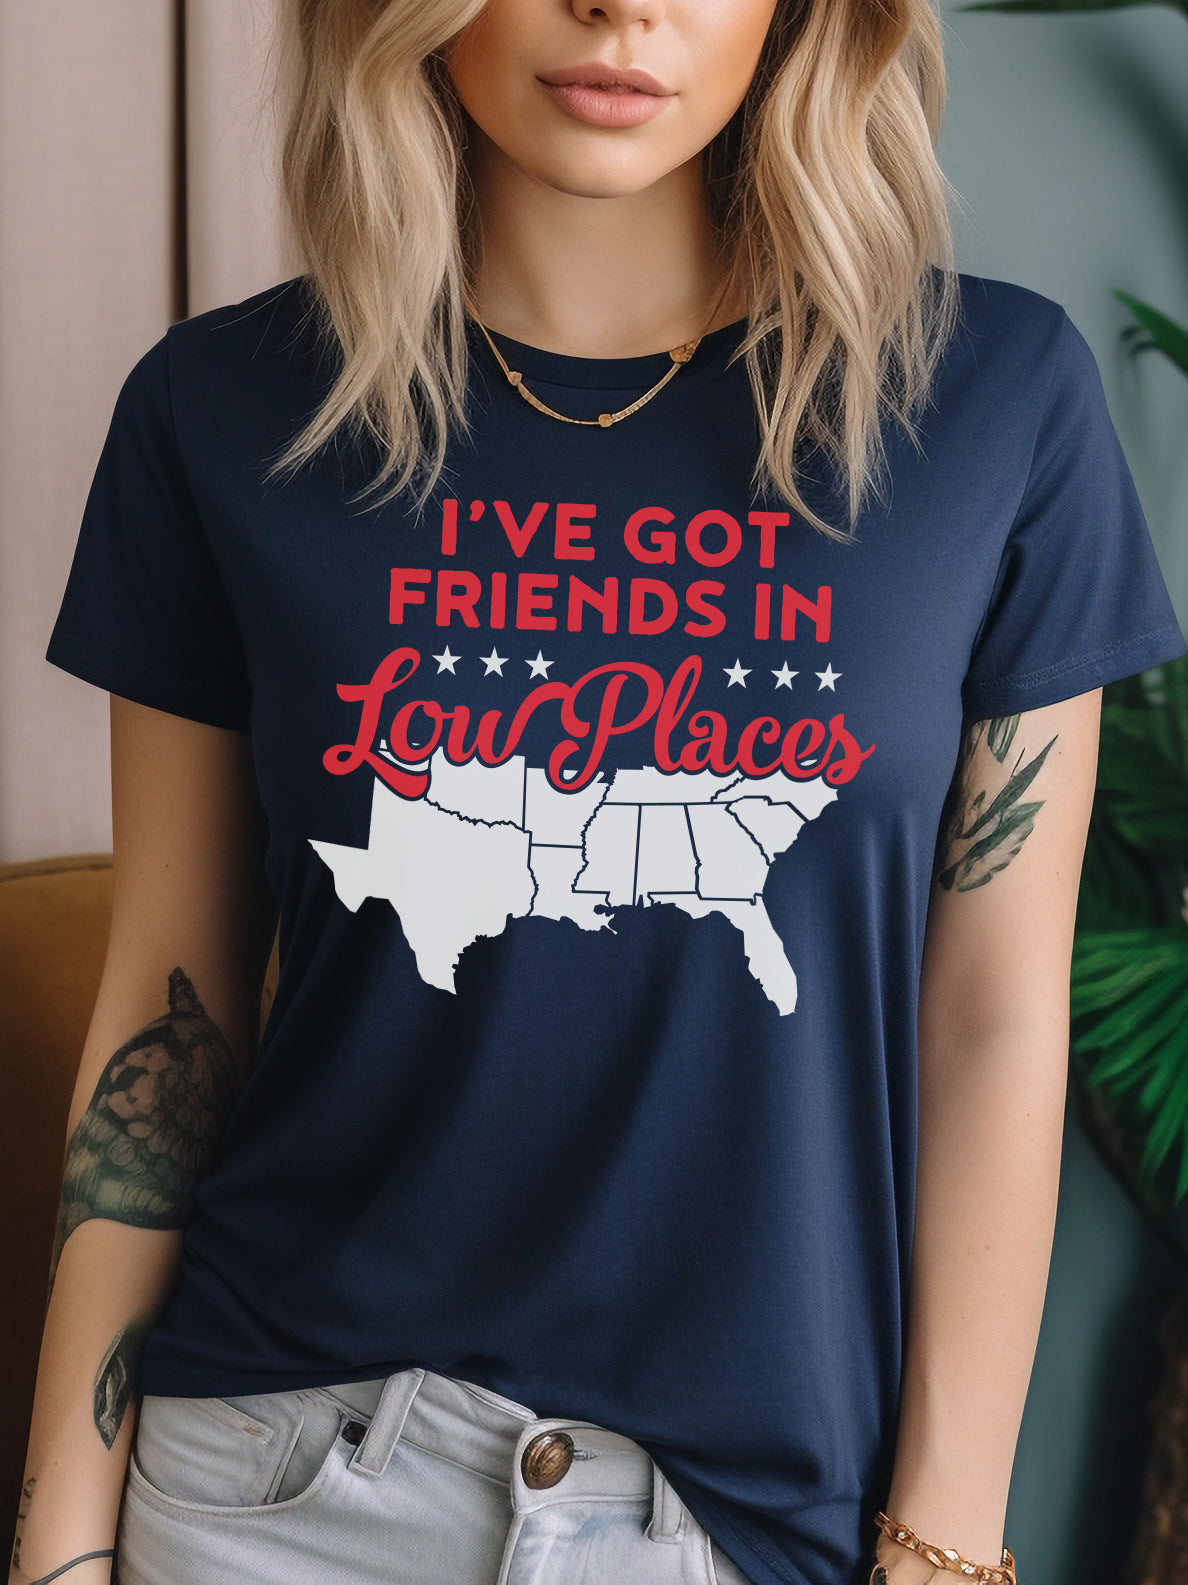 I've Got Friends Low Places | $15 | Rubbish®